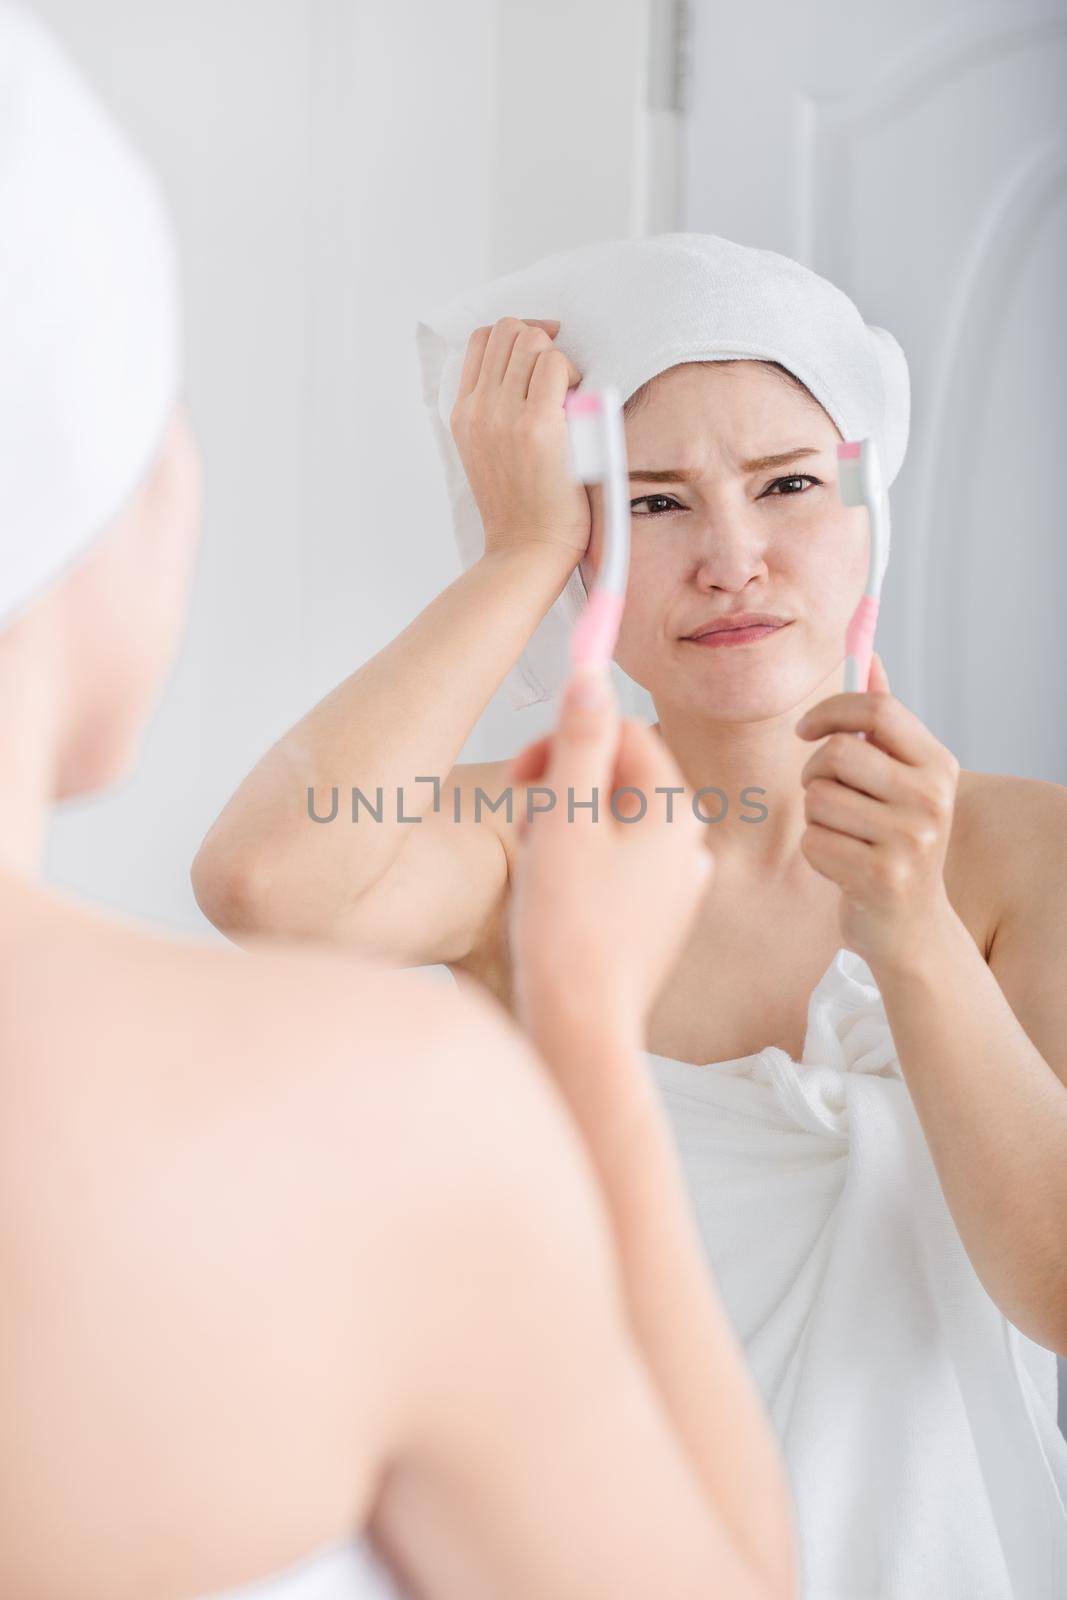 unhappy woman in bath towel brushing teeth with mirror in bathroom by geargodz